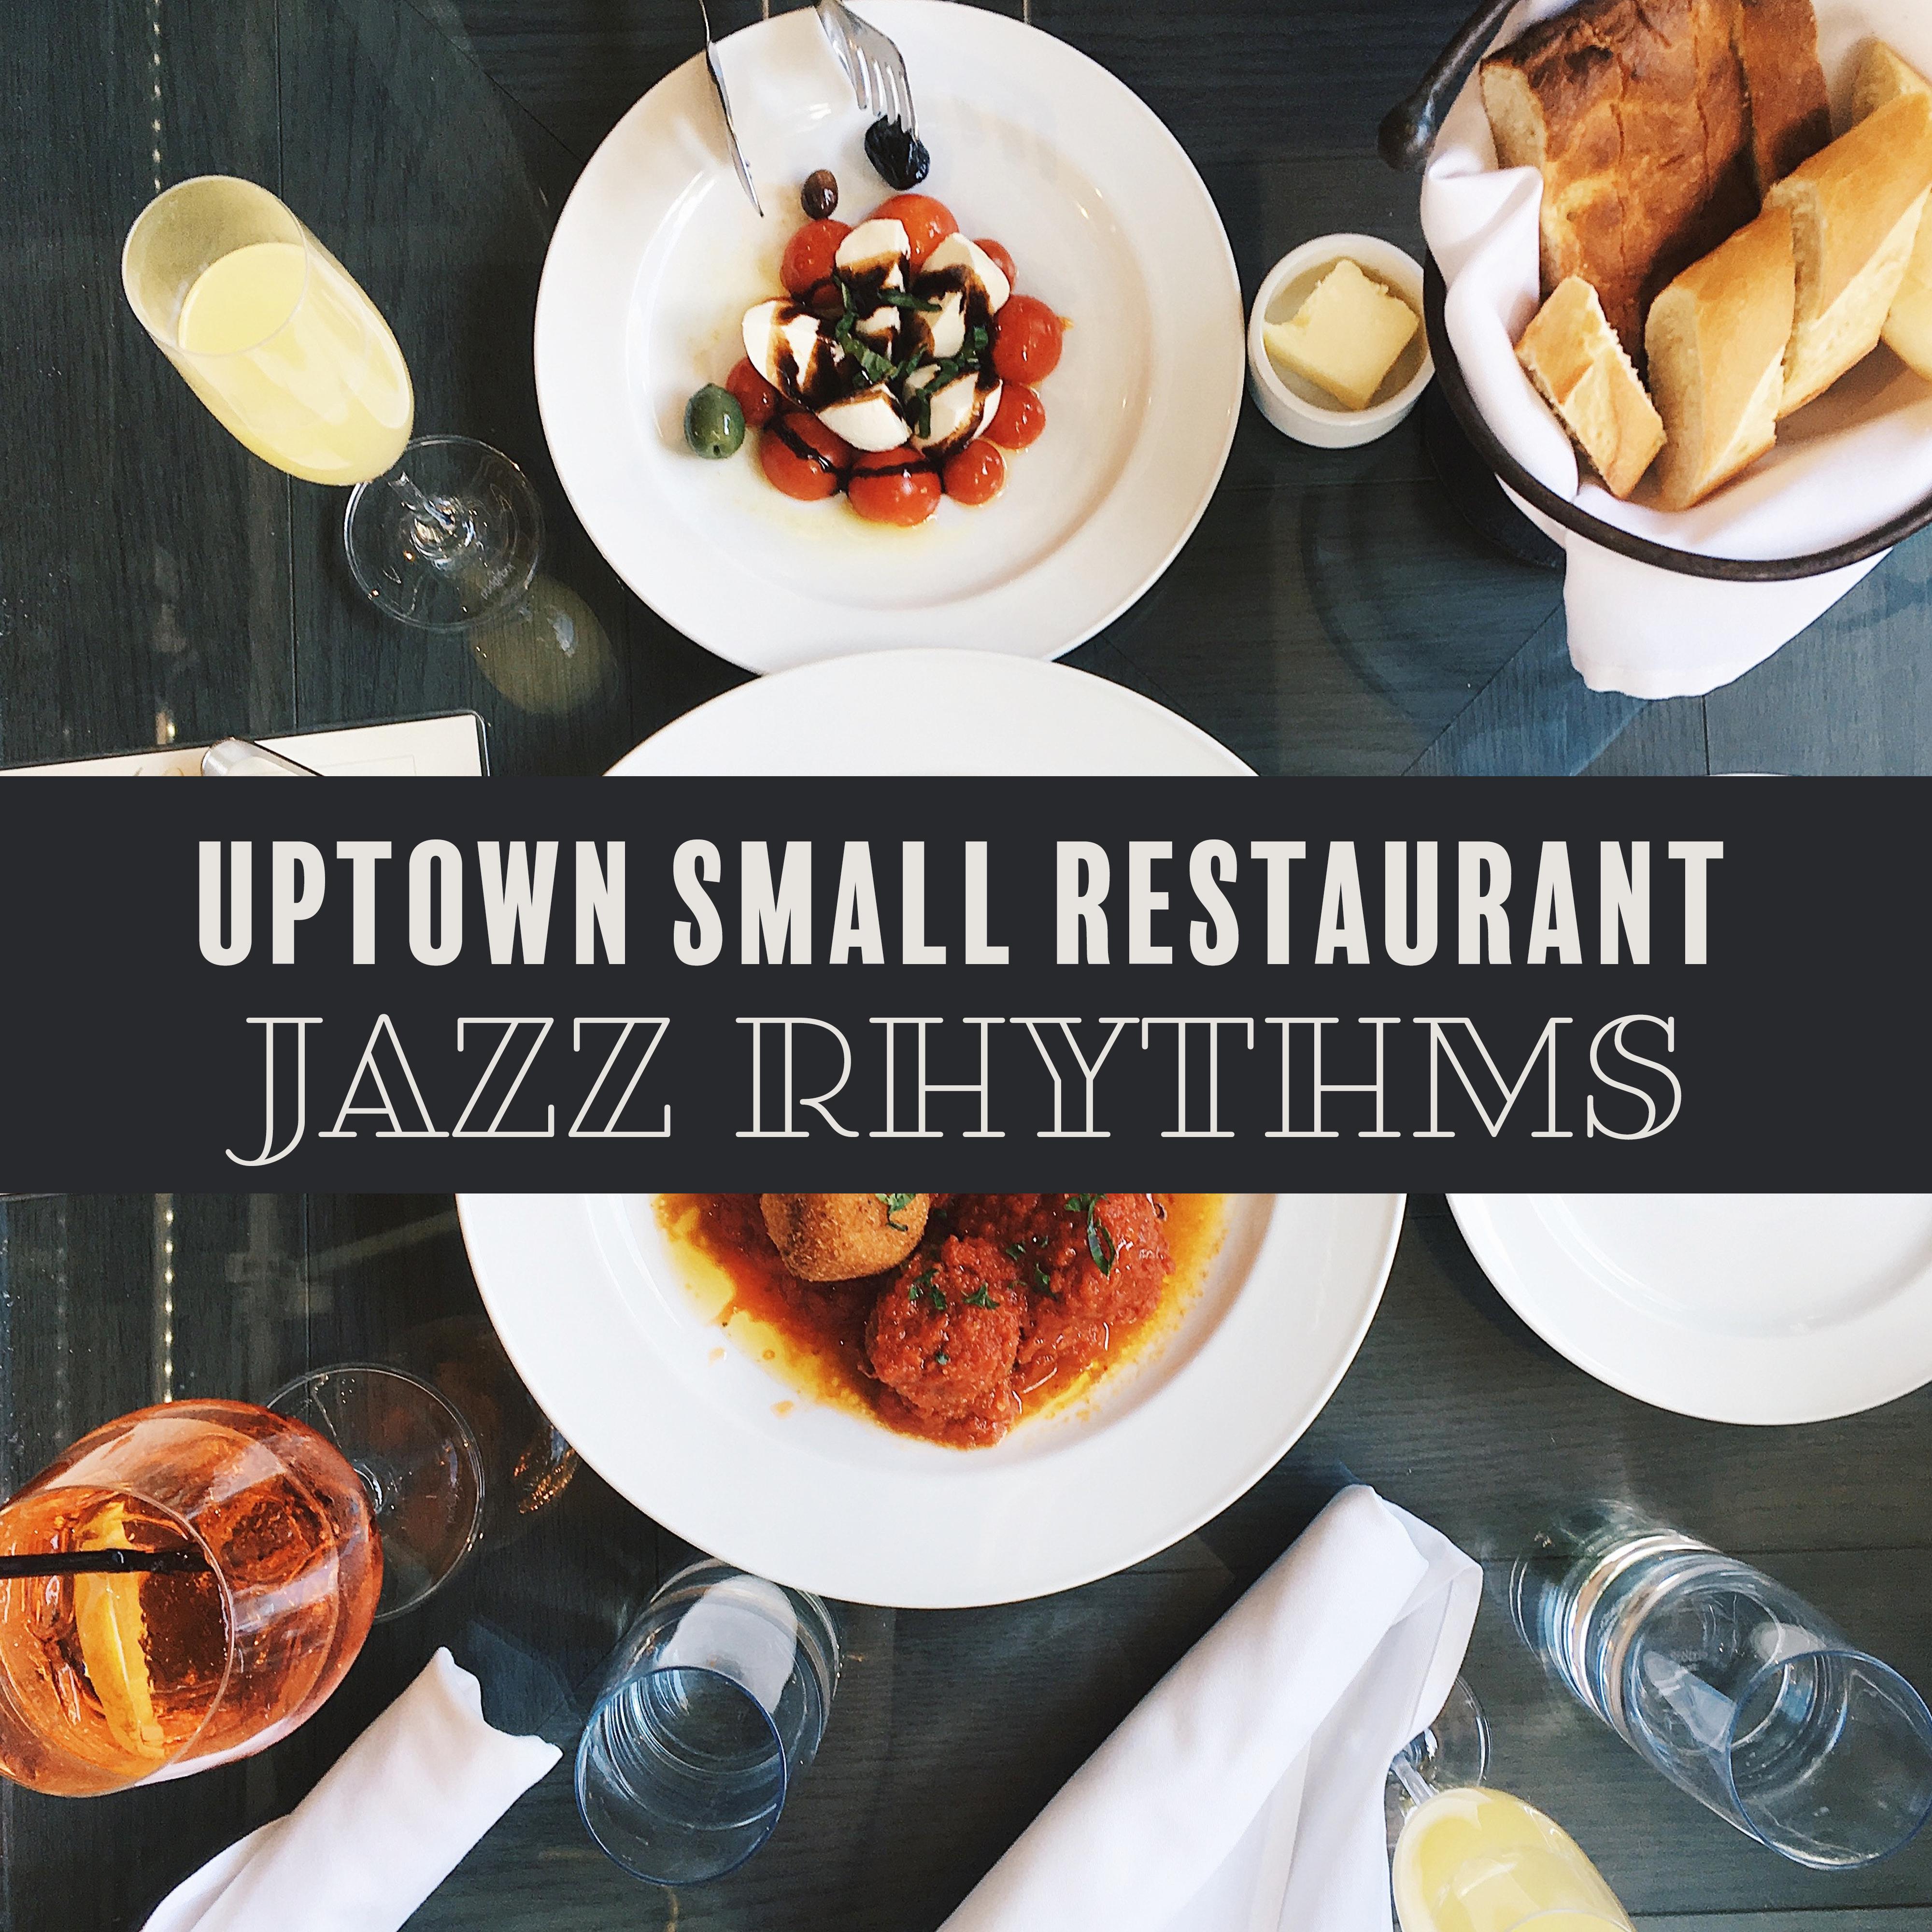 Uptown Small Restaurant Jazz Rhythms – Best Restaurant Background Jazz Music 2019